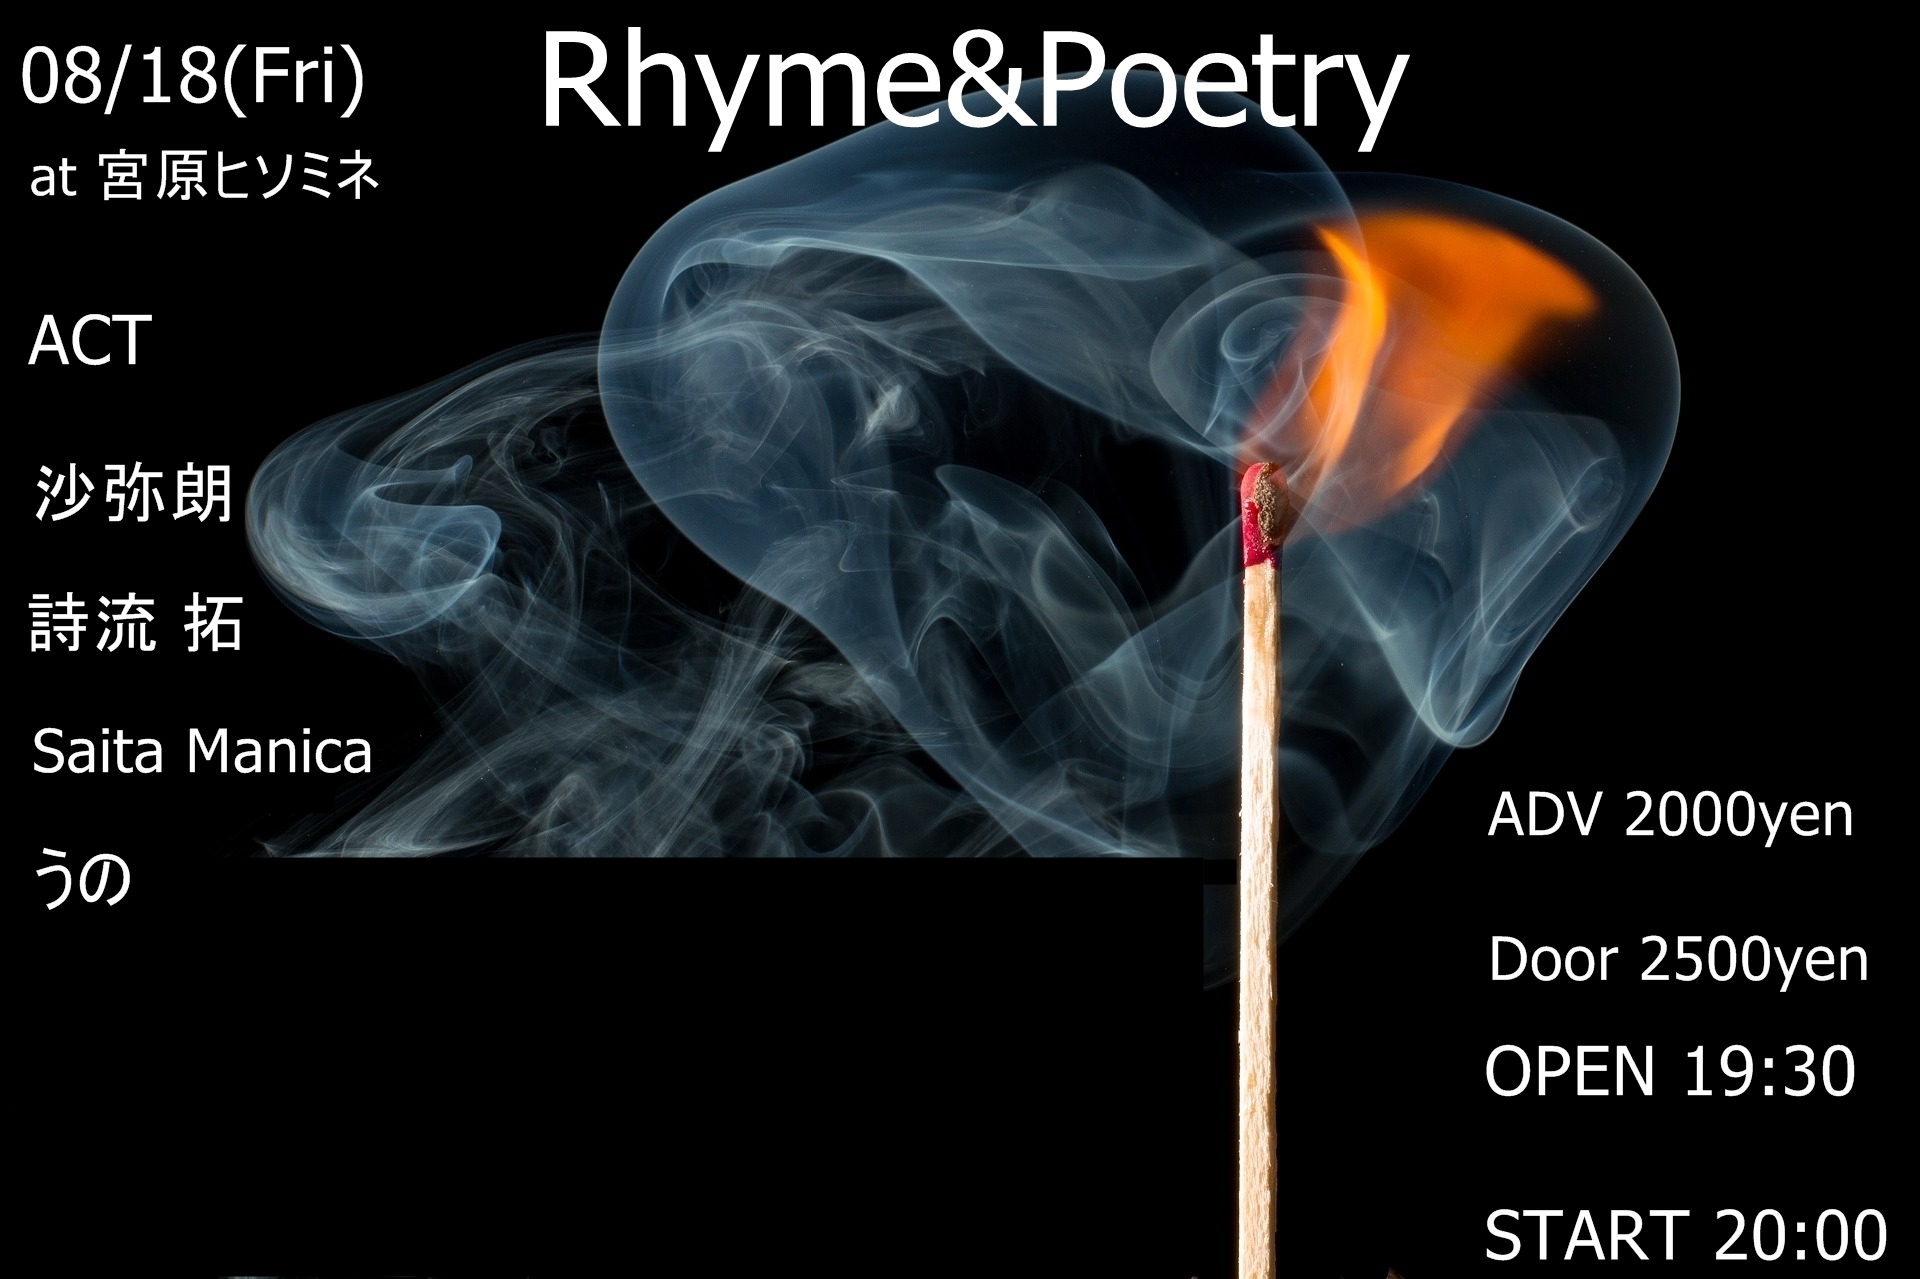 Rhyme&Poetry